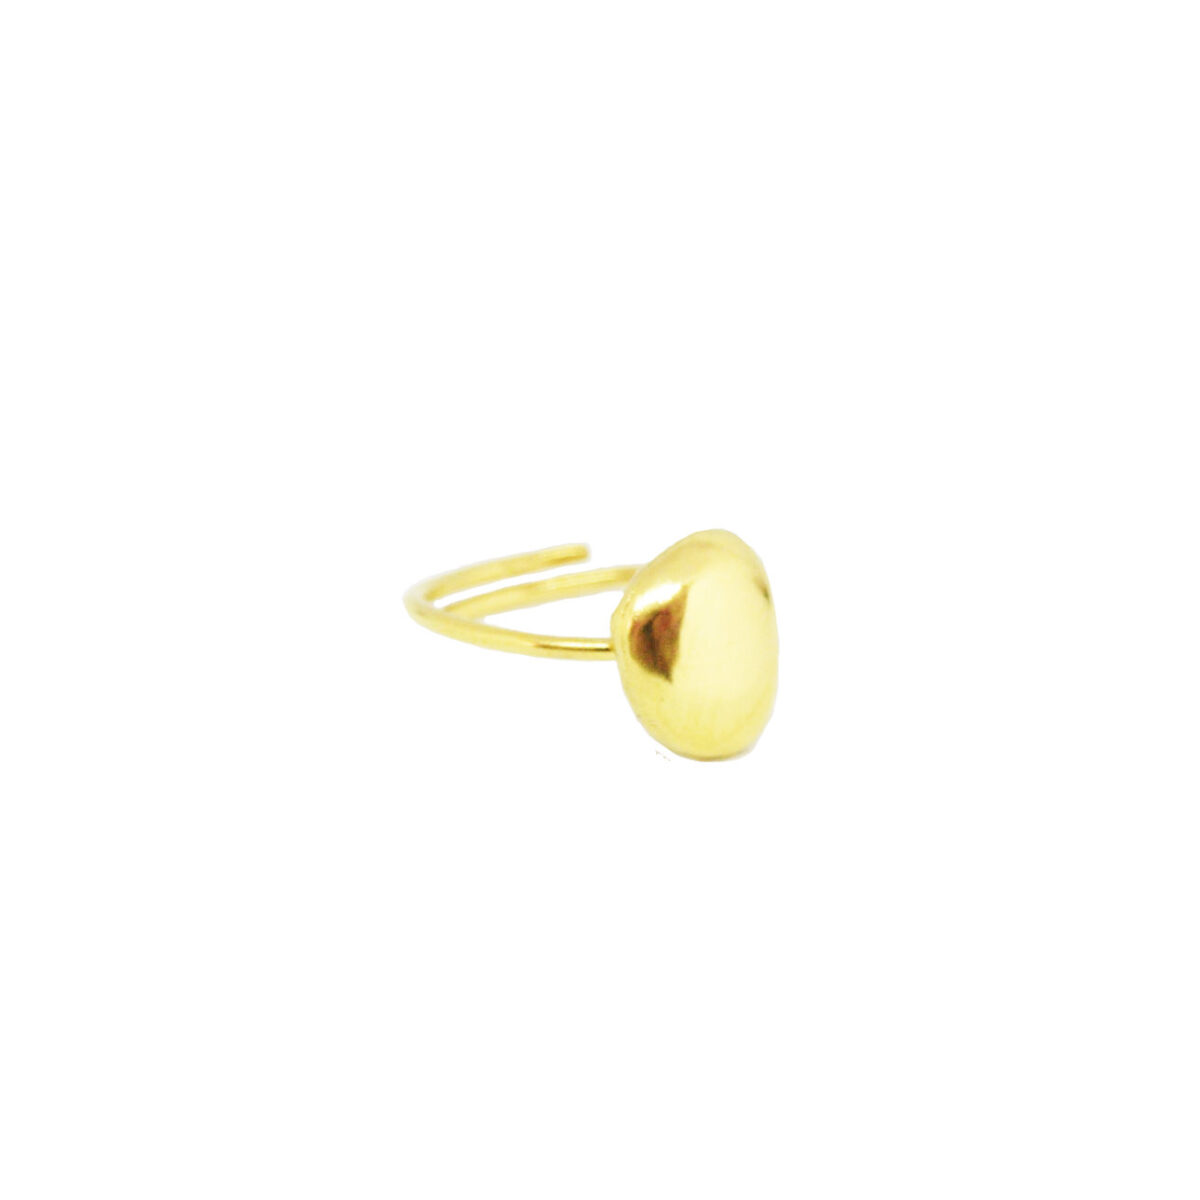 “Mini droplet” επίχρυσο δαχτυλίδι “Mini droplet” επίχρυσο δαχτυλίδι “Mini droplet” επίχρυσο δαχτυλίδι 5